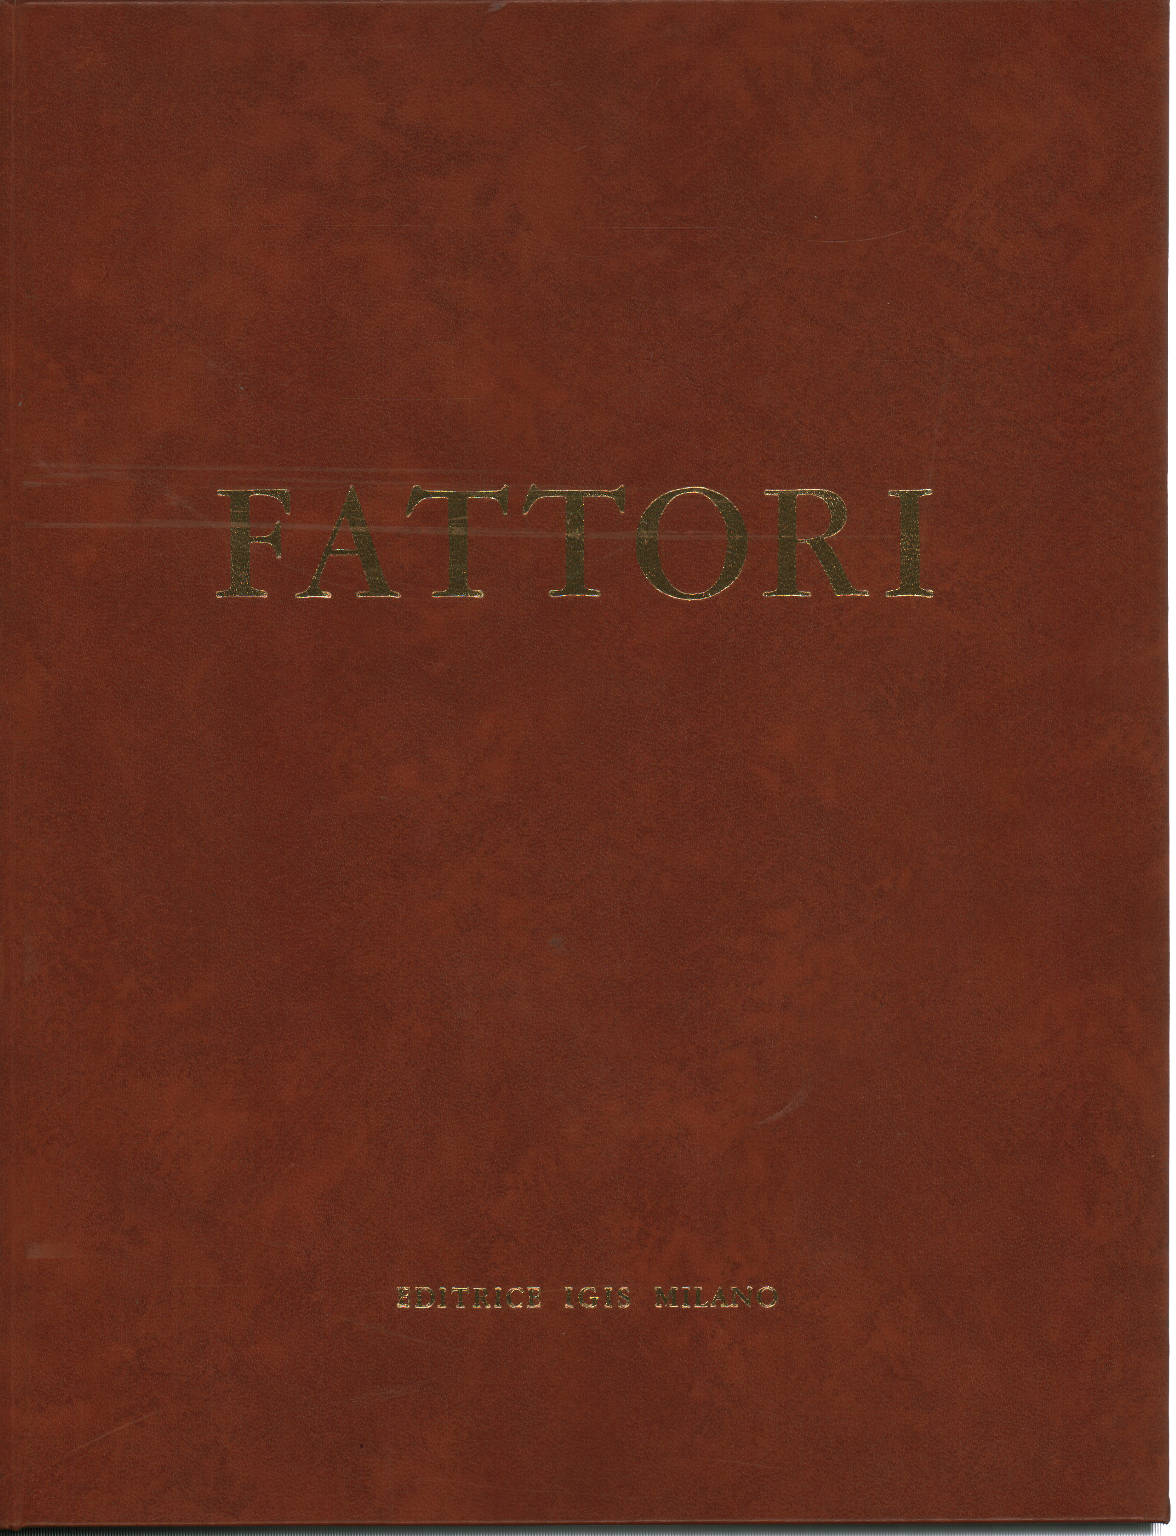 177 Etchings by Giovanni Fattori, Luigi Servolini